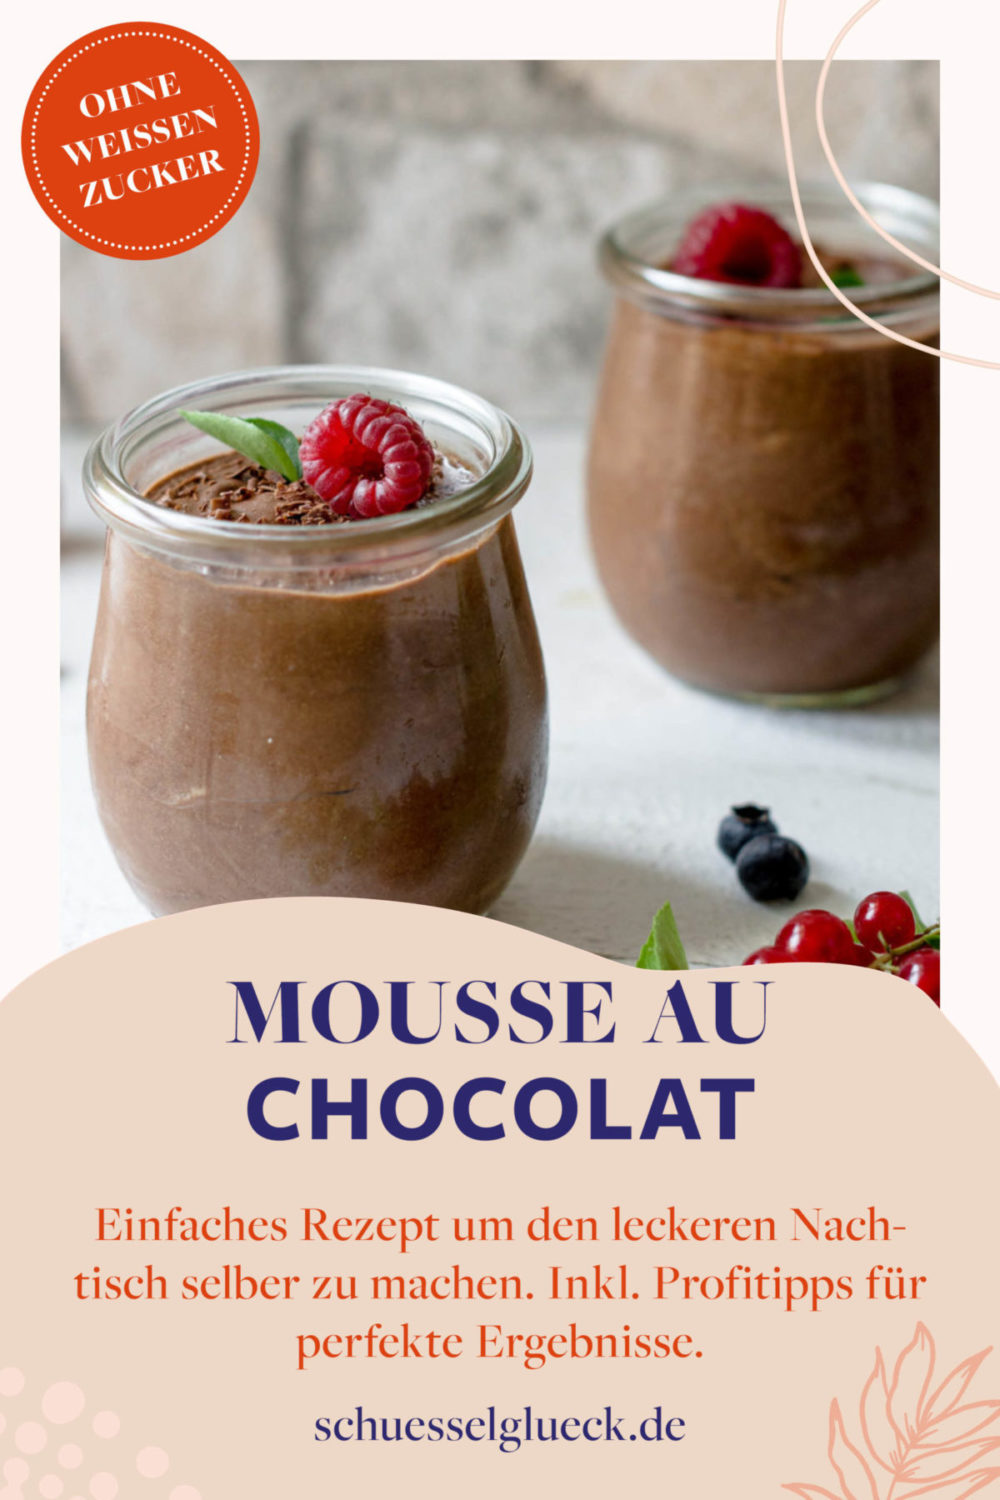 Weltbeste Mousse au Chocolat  – mit Anleitung vom Profi für perfekte Ergebnisse!